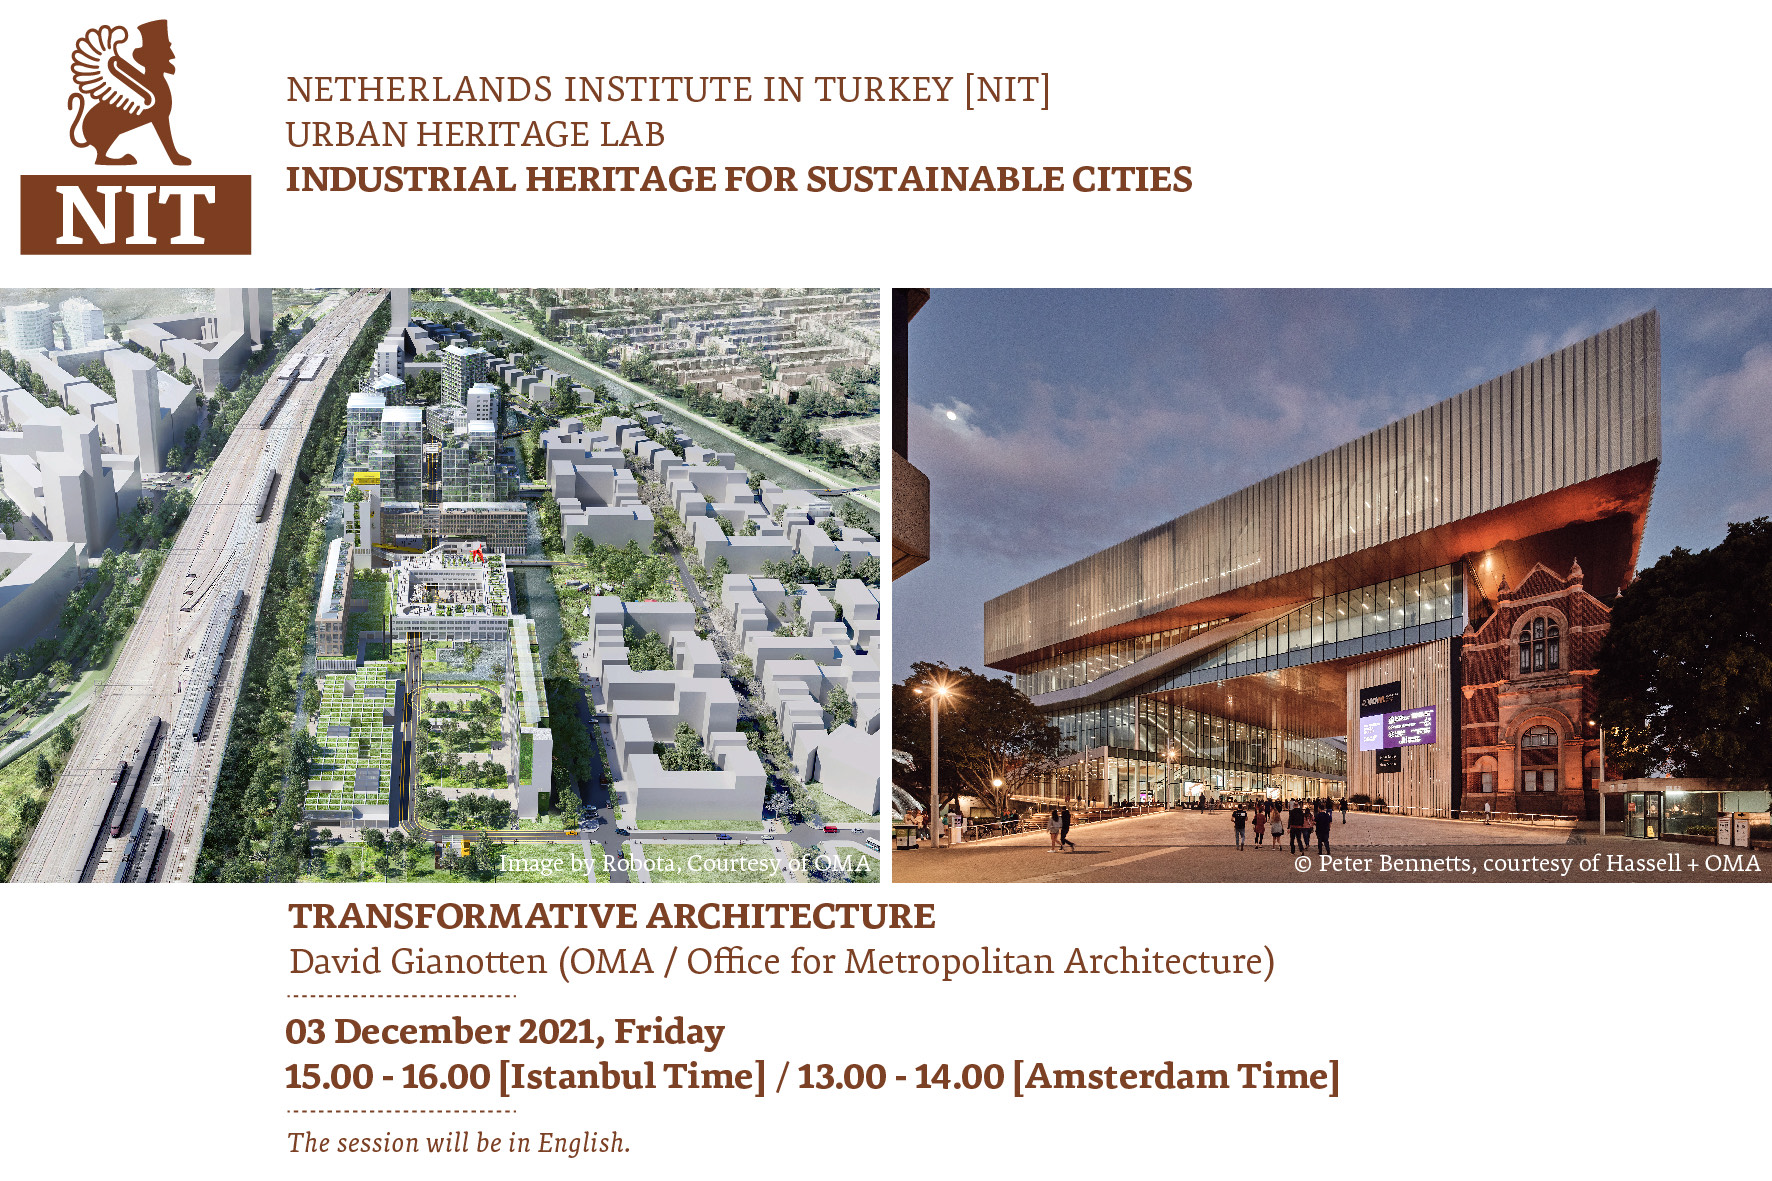 NIT Kentsel Miras Laboratuvarı: Sürdürülebilir Şehirler için Endüstri Mirası – Transformative Architecture